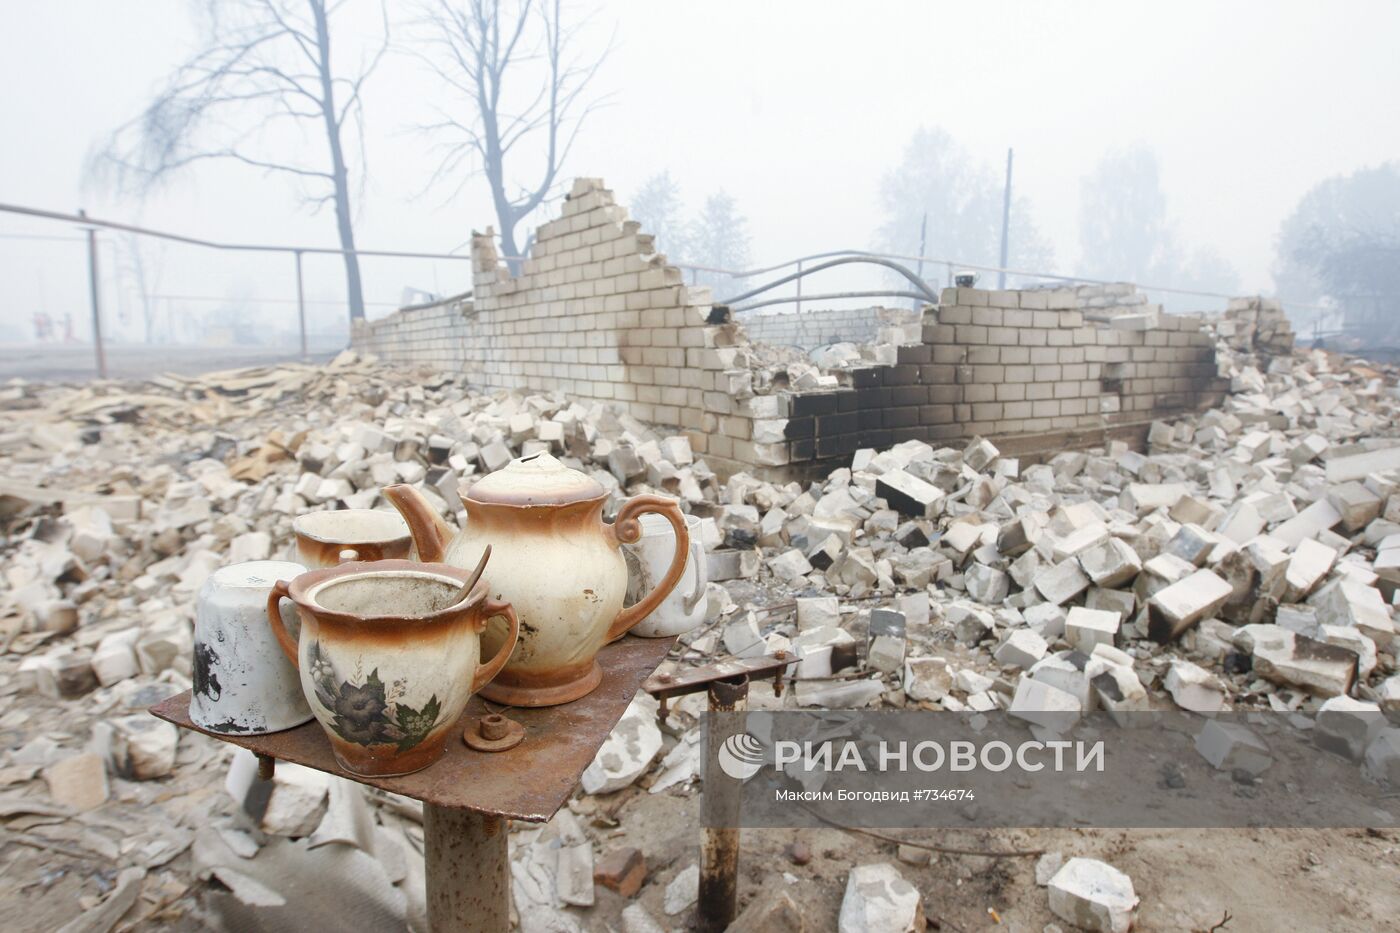 Сгоревший дом в поселке Борковка Нижегородской области